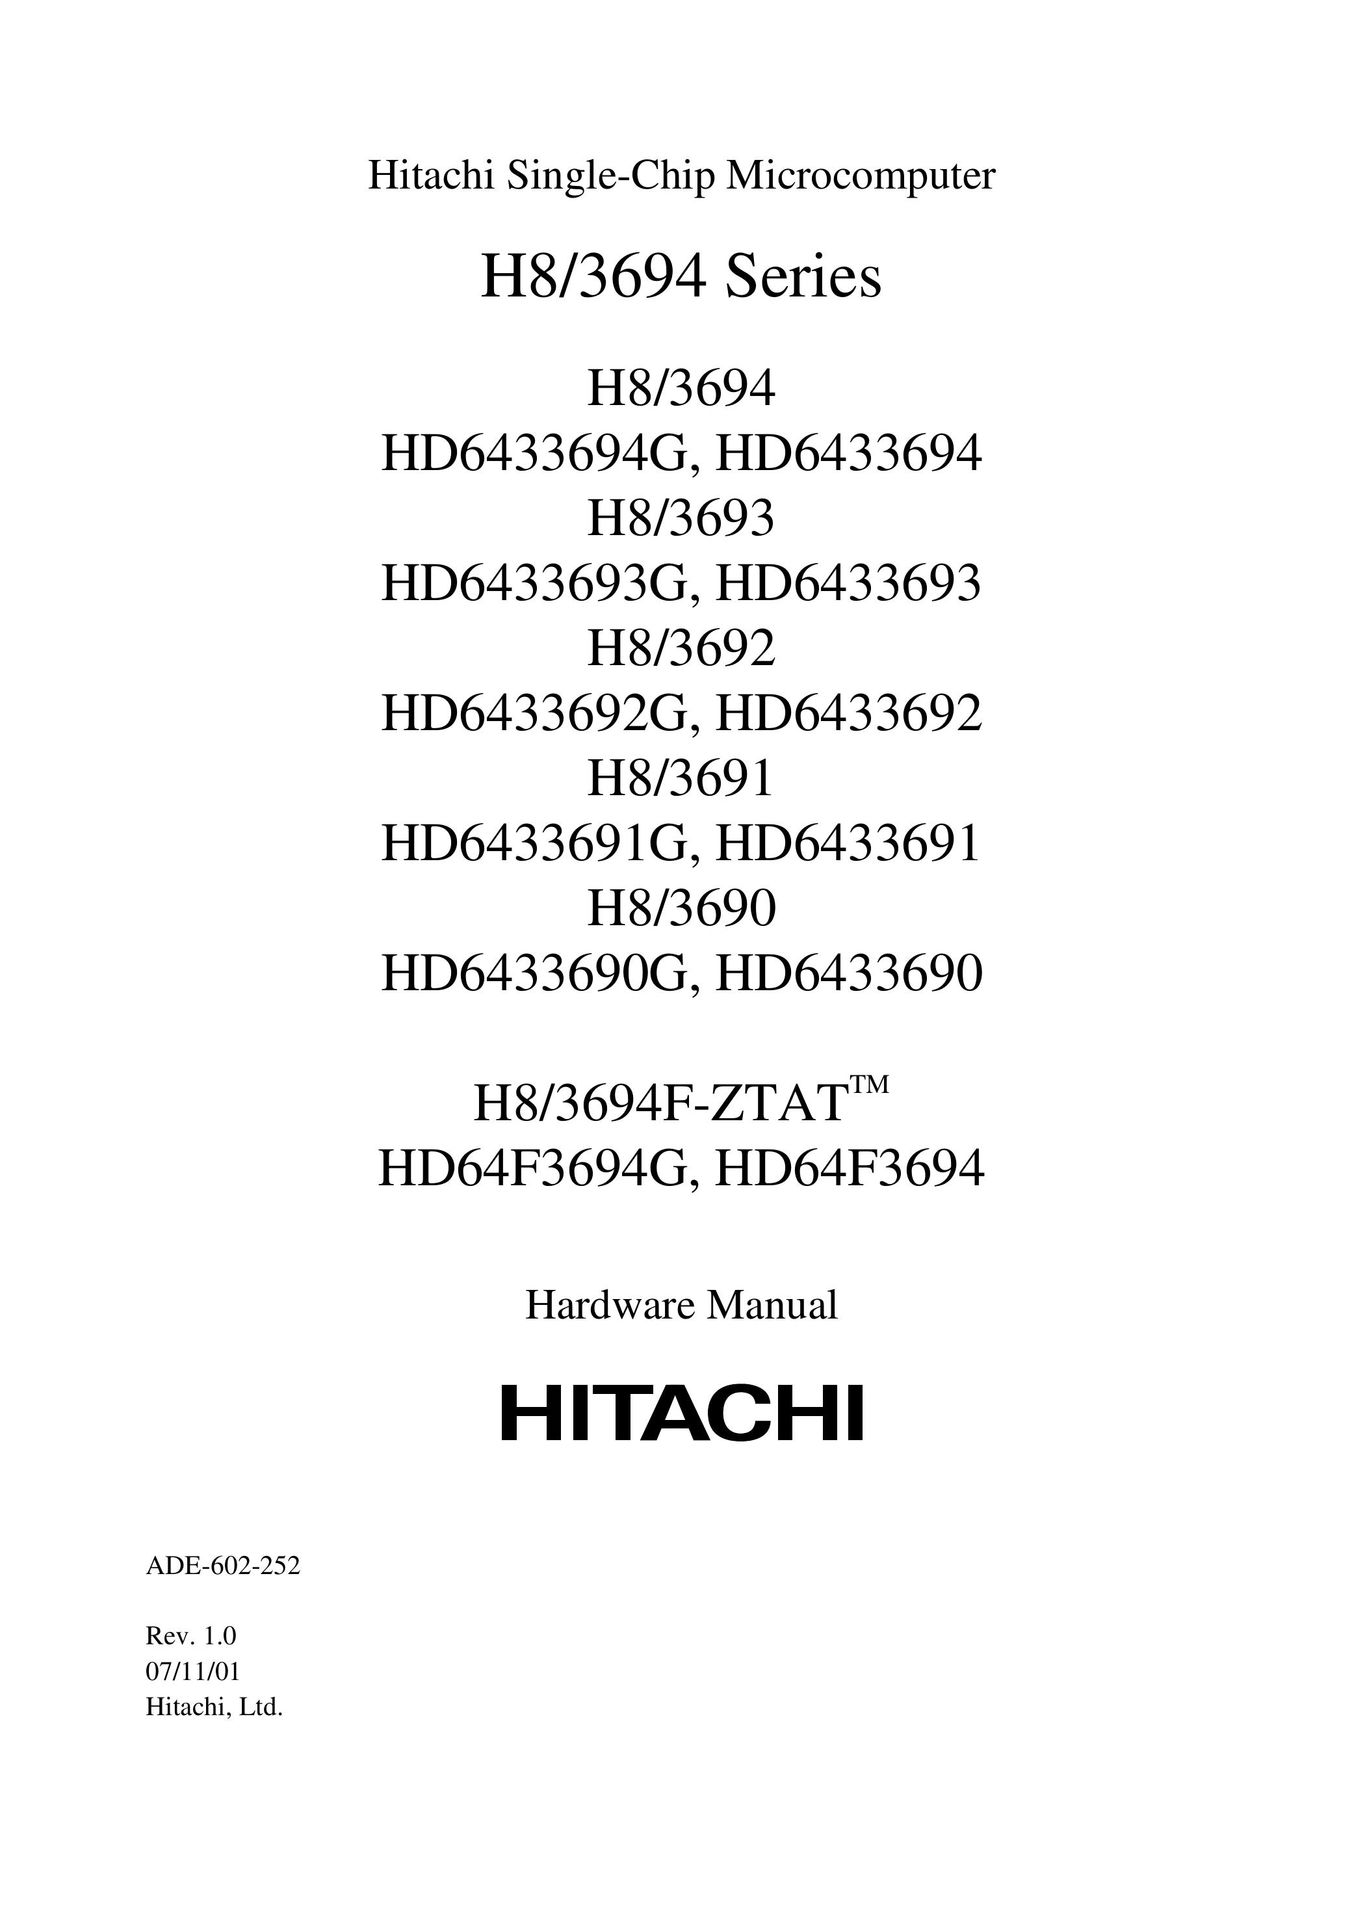 Hitachi H8/3690 TV Mount User Manual